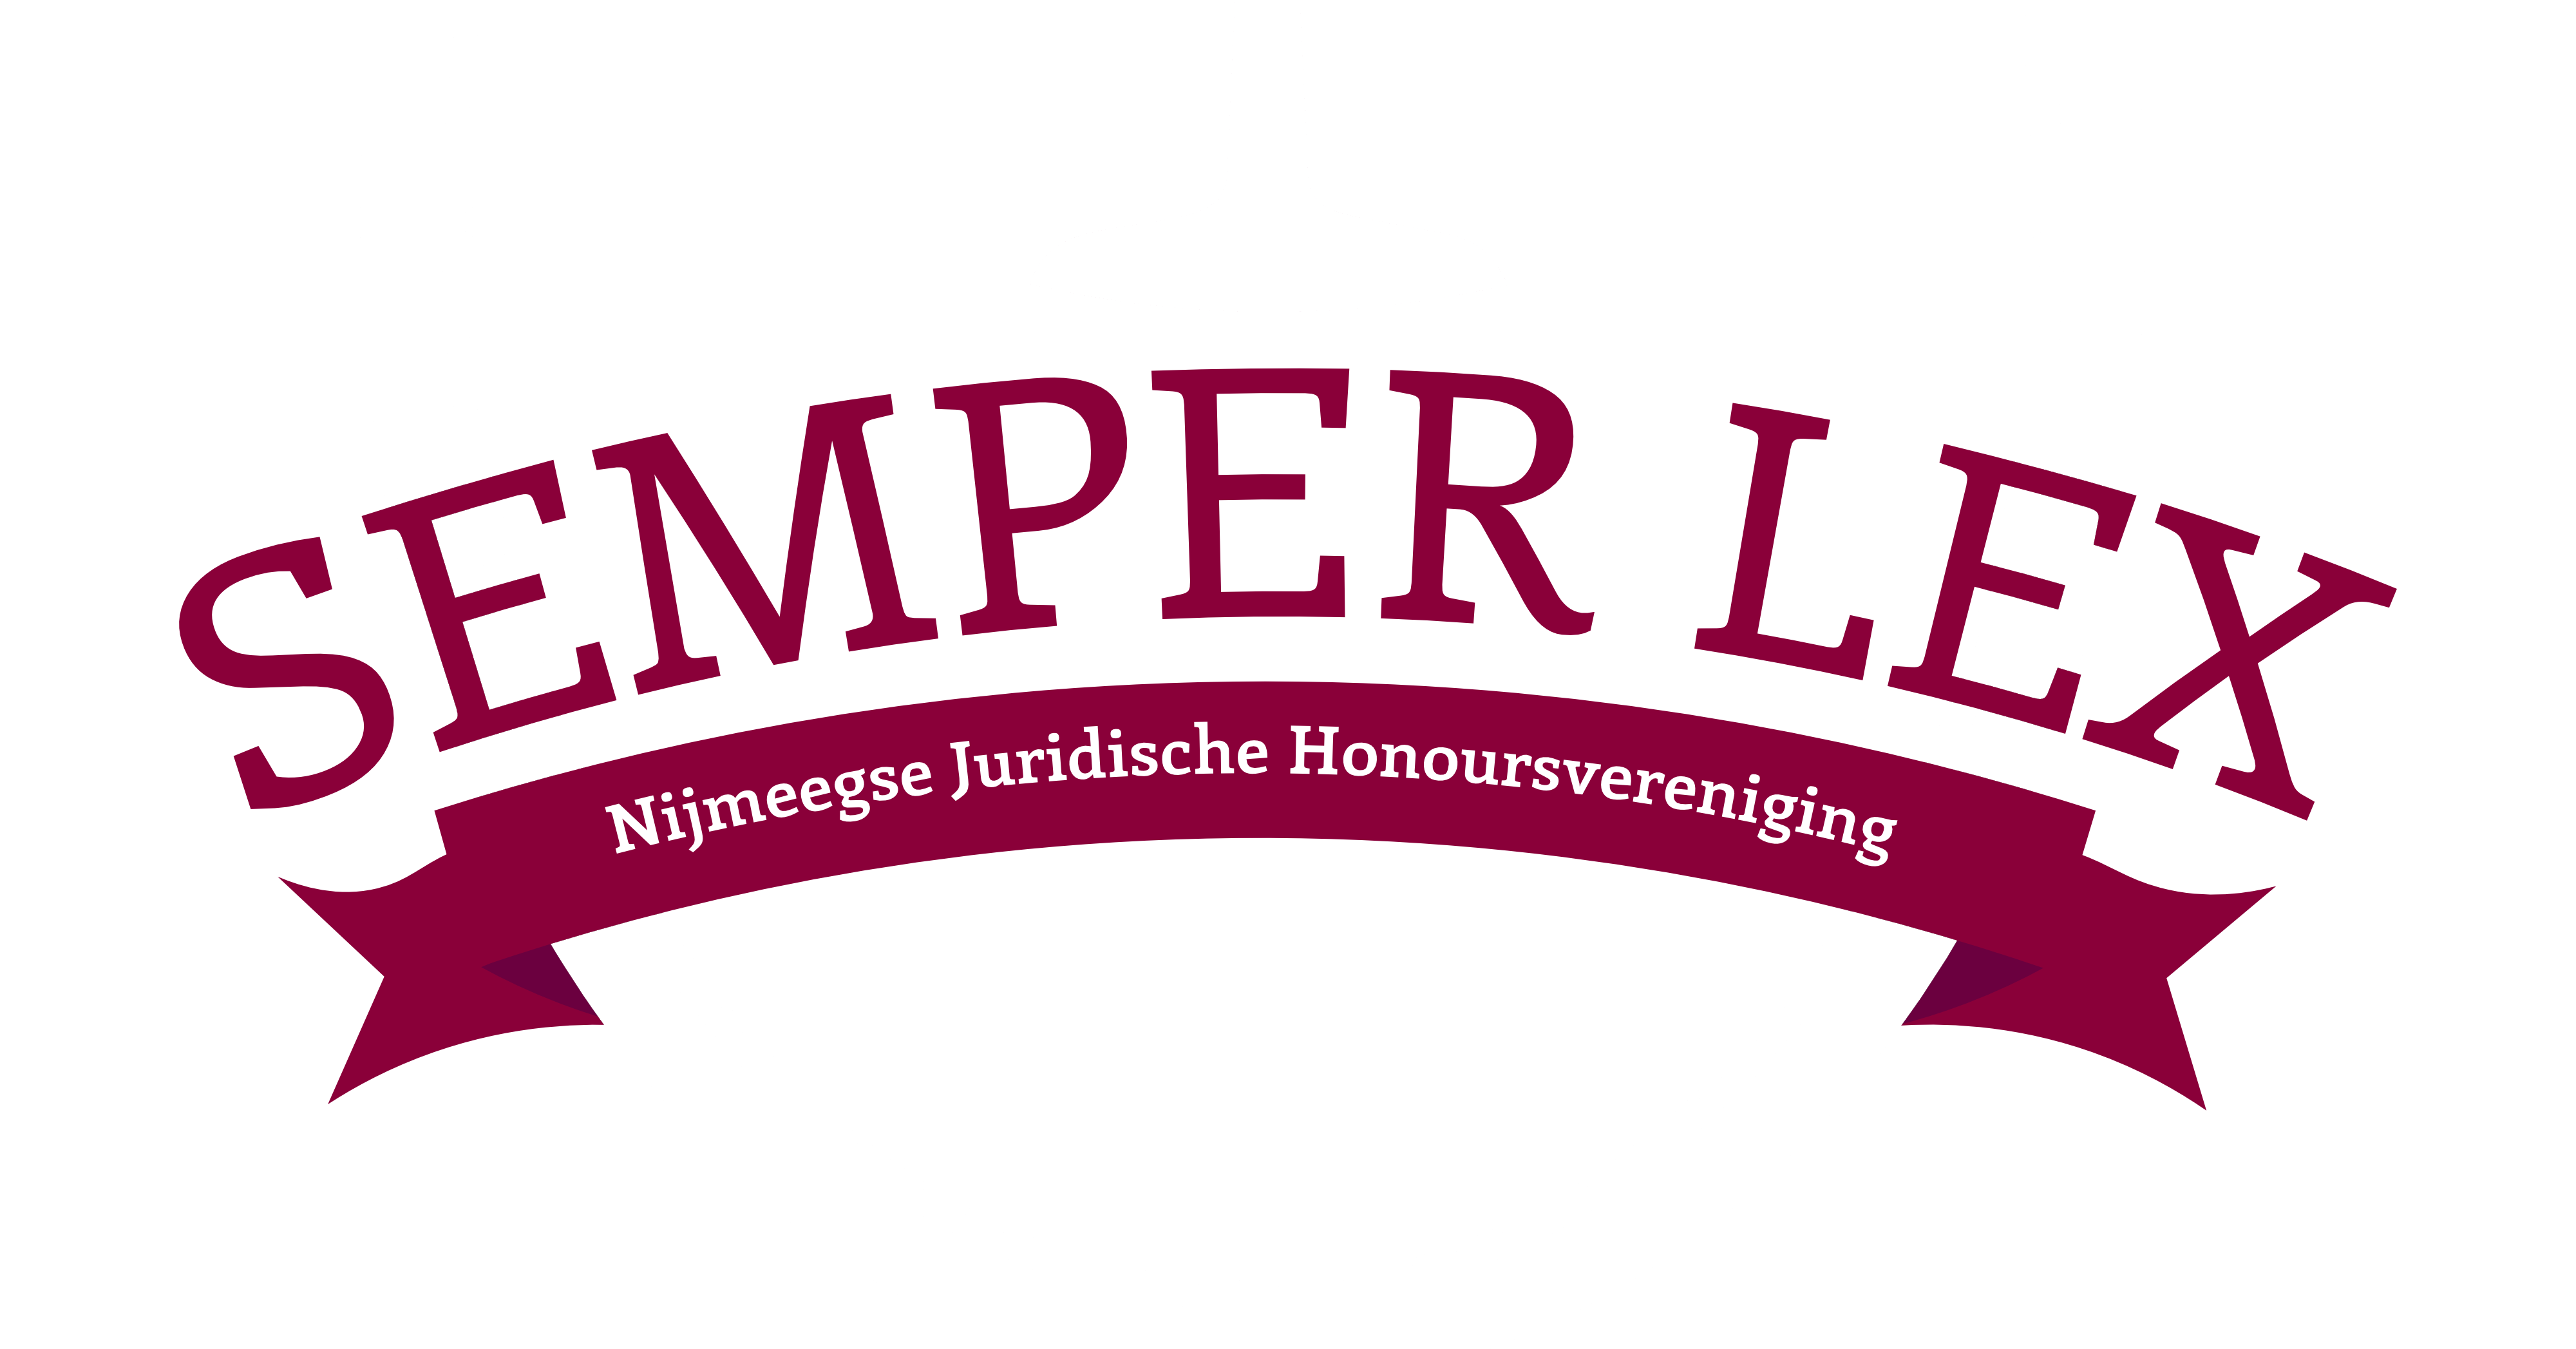 Semper Lex | Nijmeegse Juridische Honoursvereniging